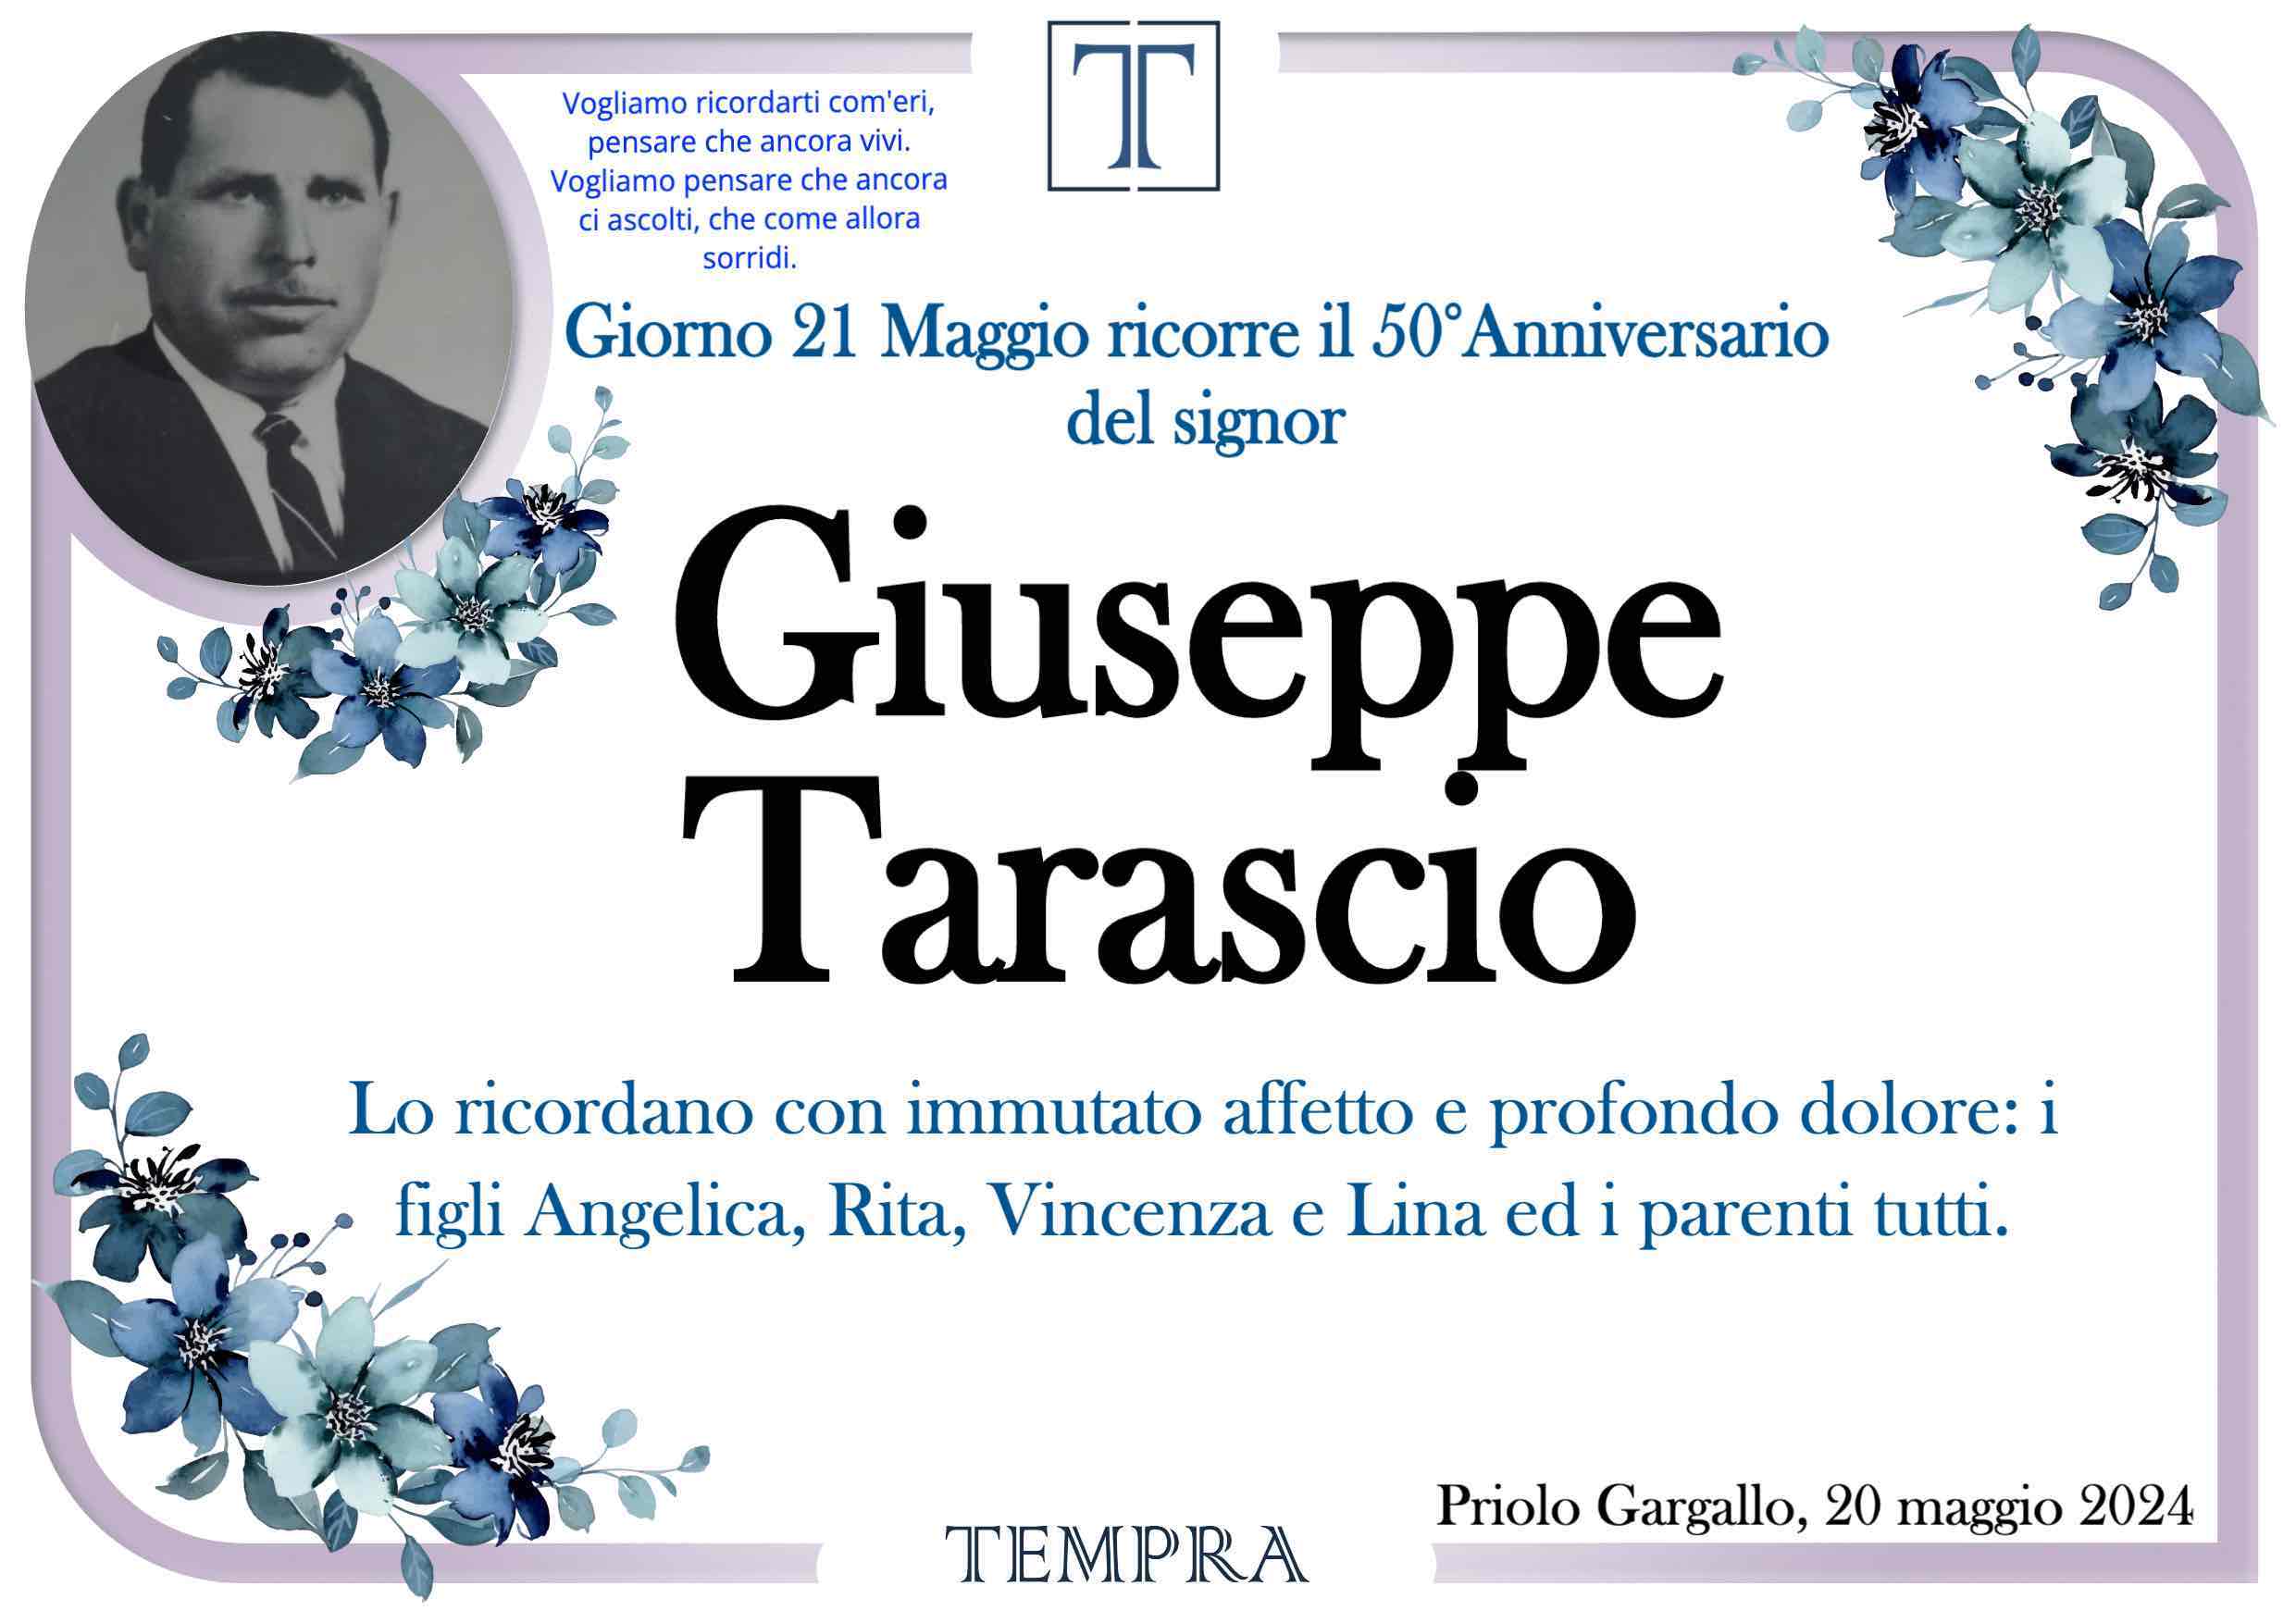 Giuseppe Tarascio